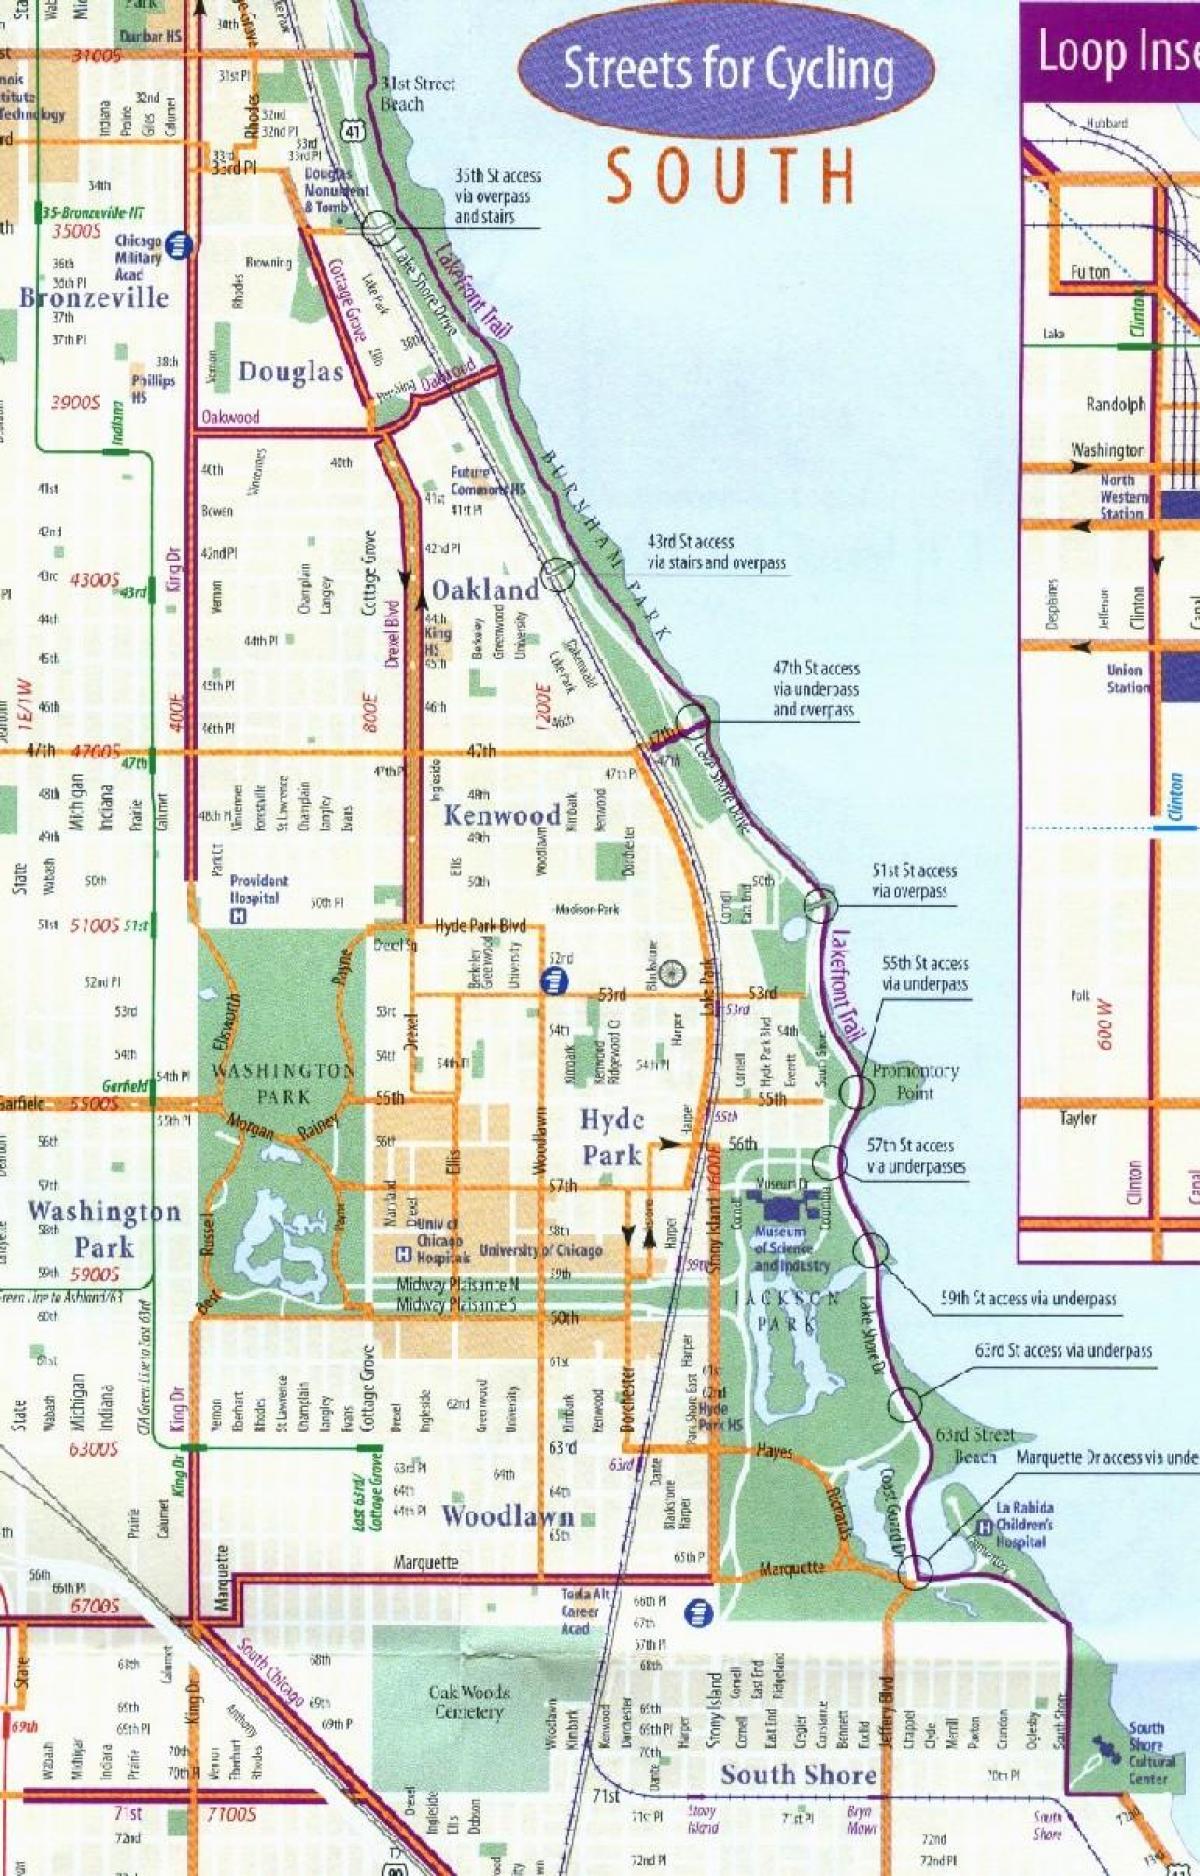 Chicago bike lane mapu